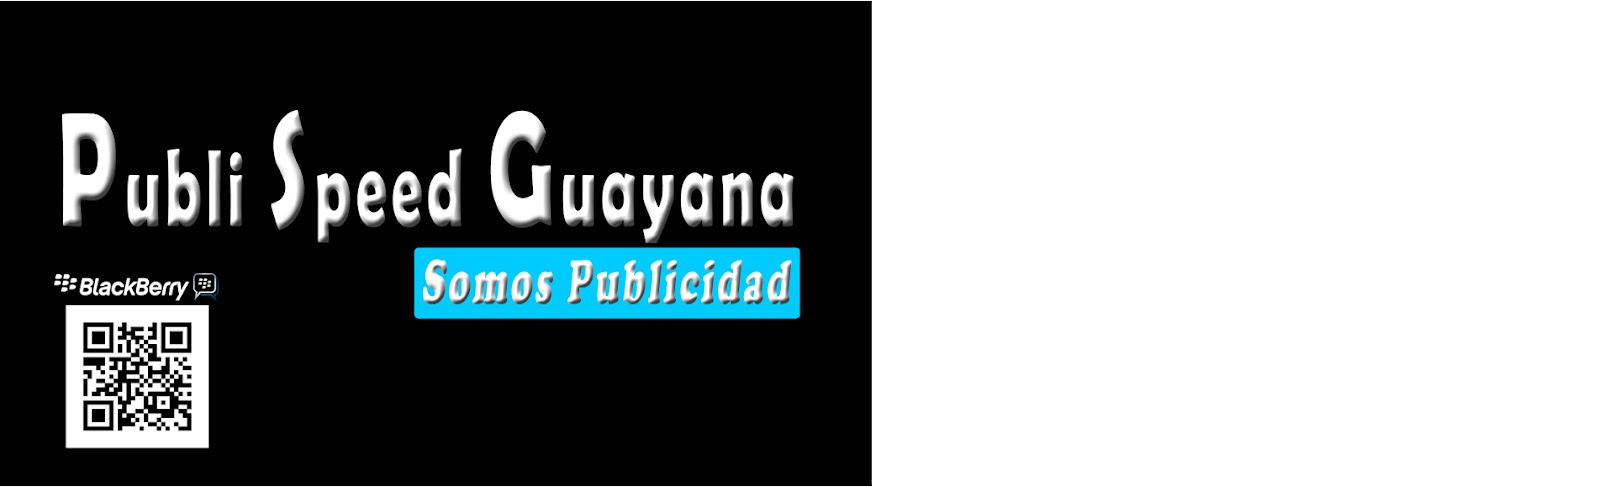 Publi Speed Guayana Somos Publicidad